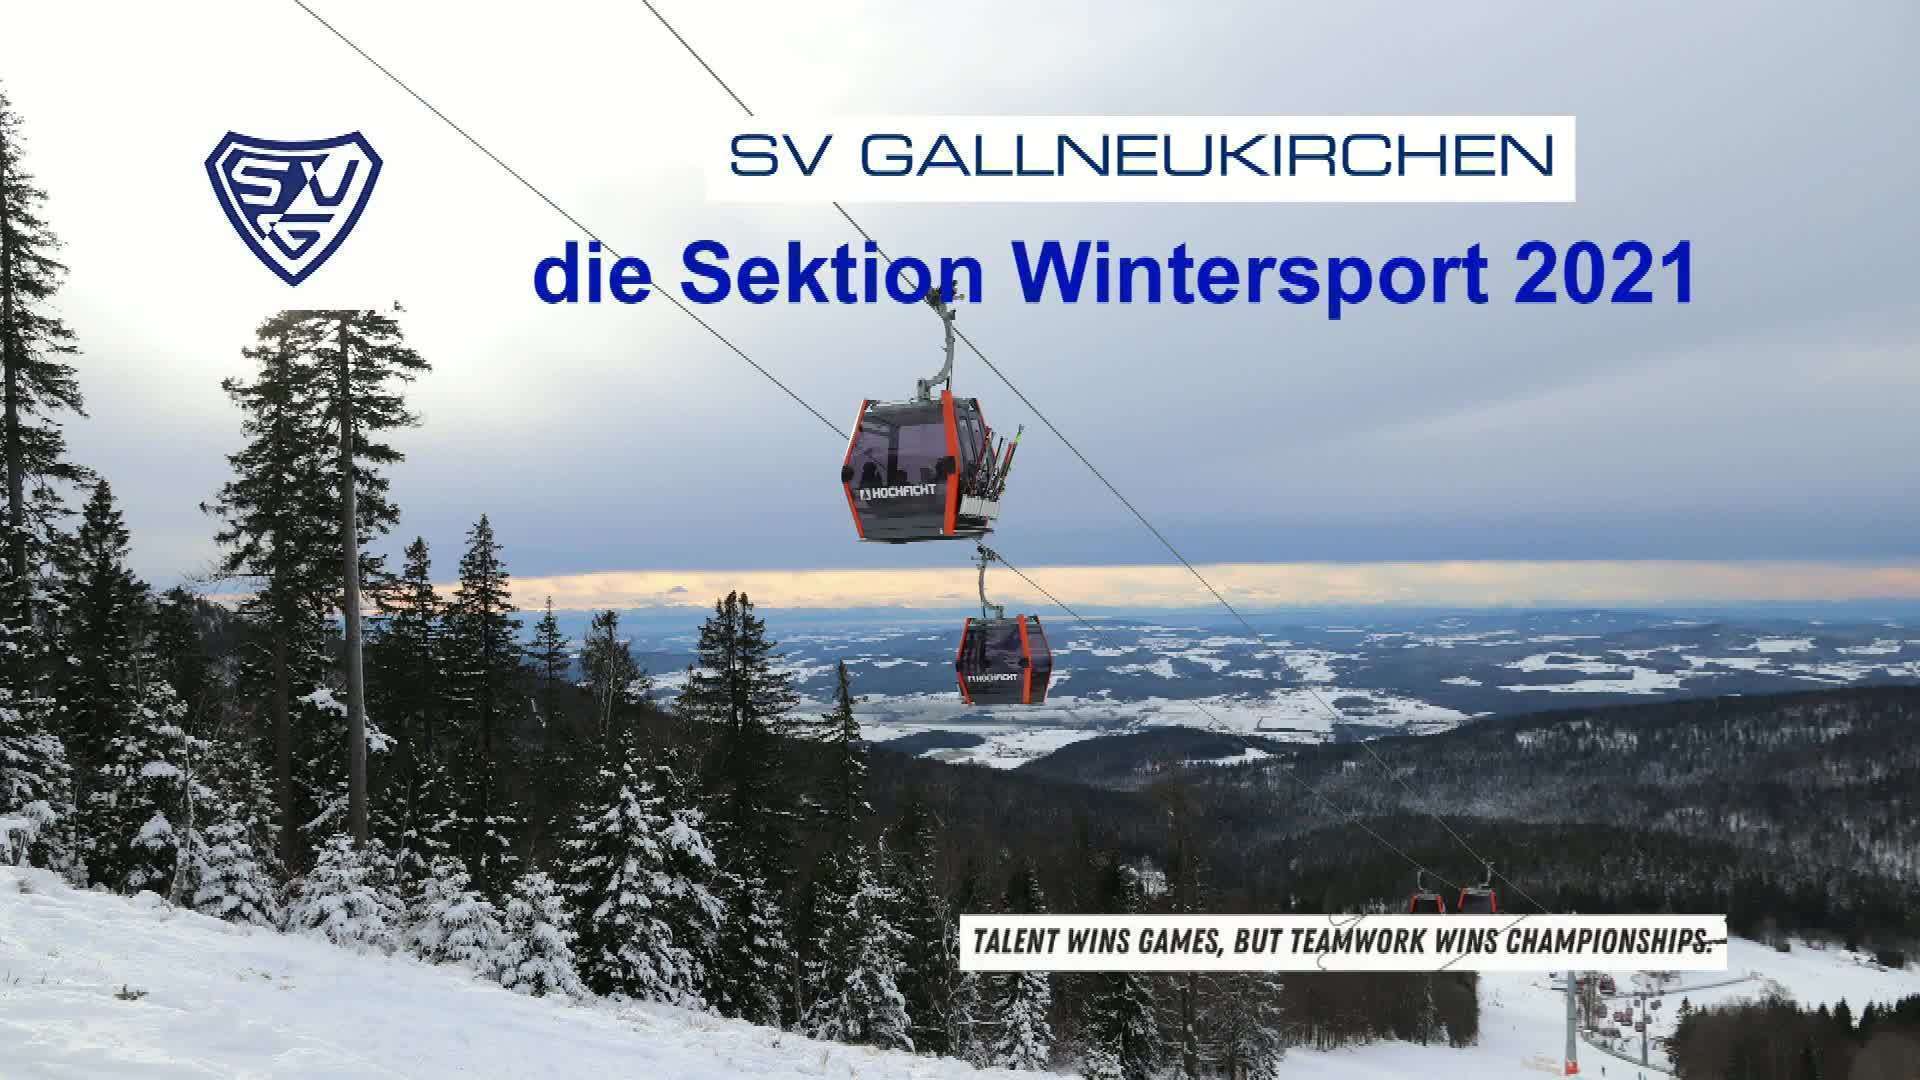 Die SVG Sektion Wintersport 2021